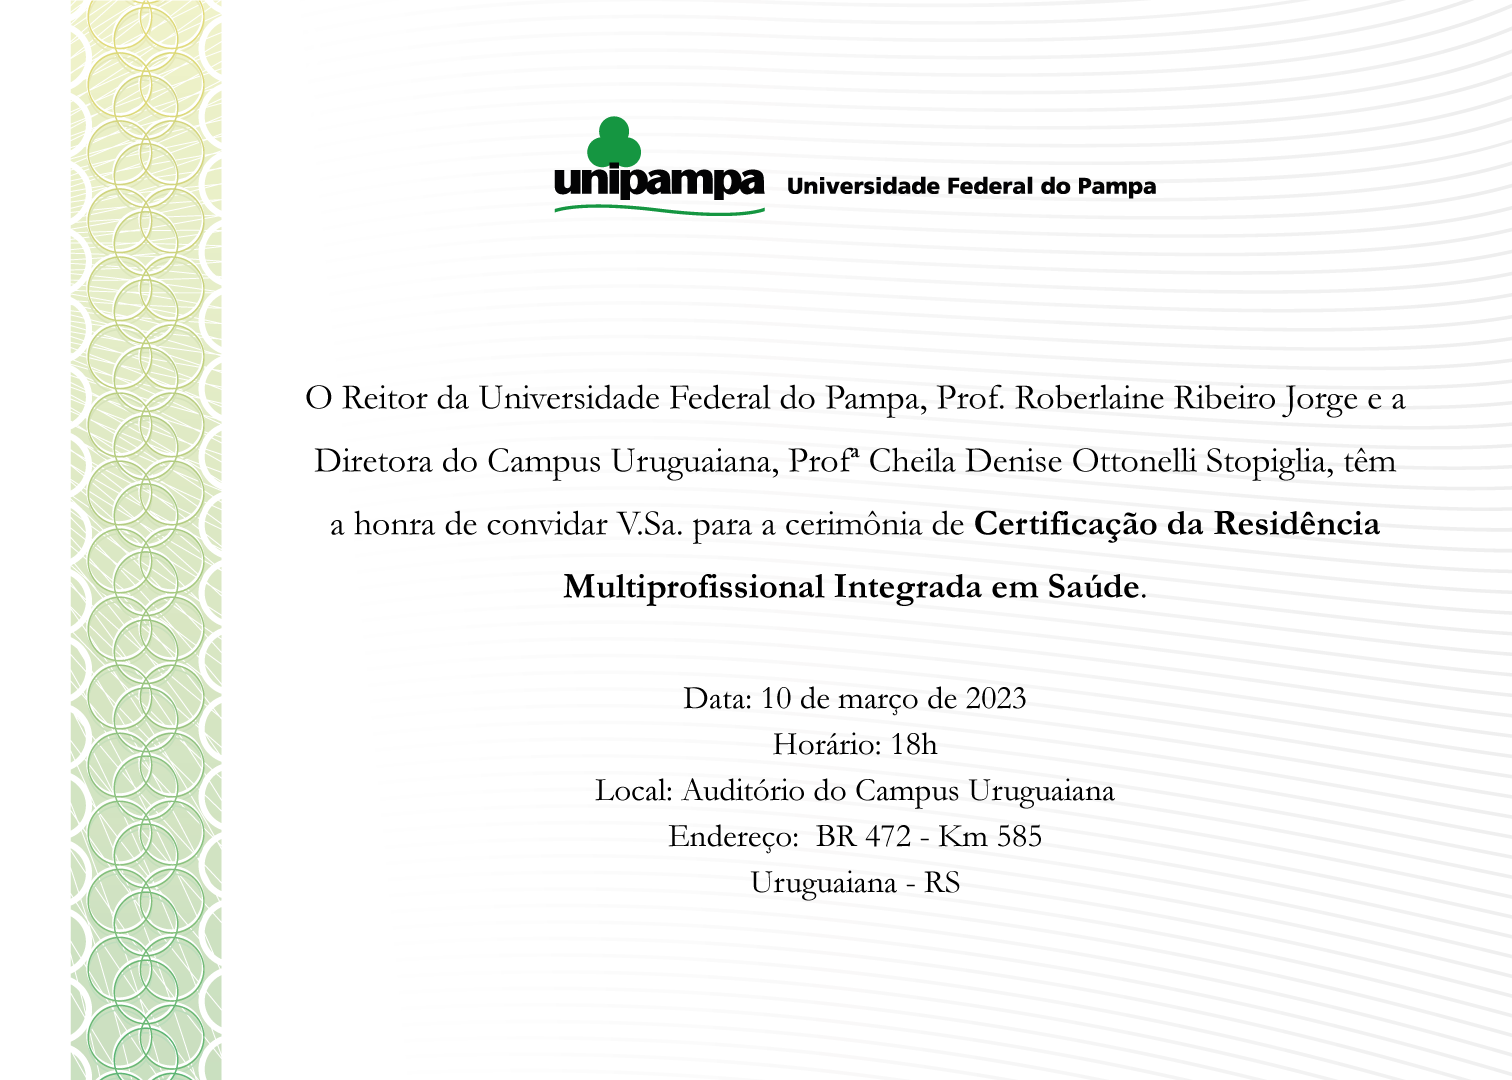 Unipampa realiza cerimônia de certificação da Residência Multiprofissional Integrada em Saúde